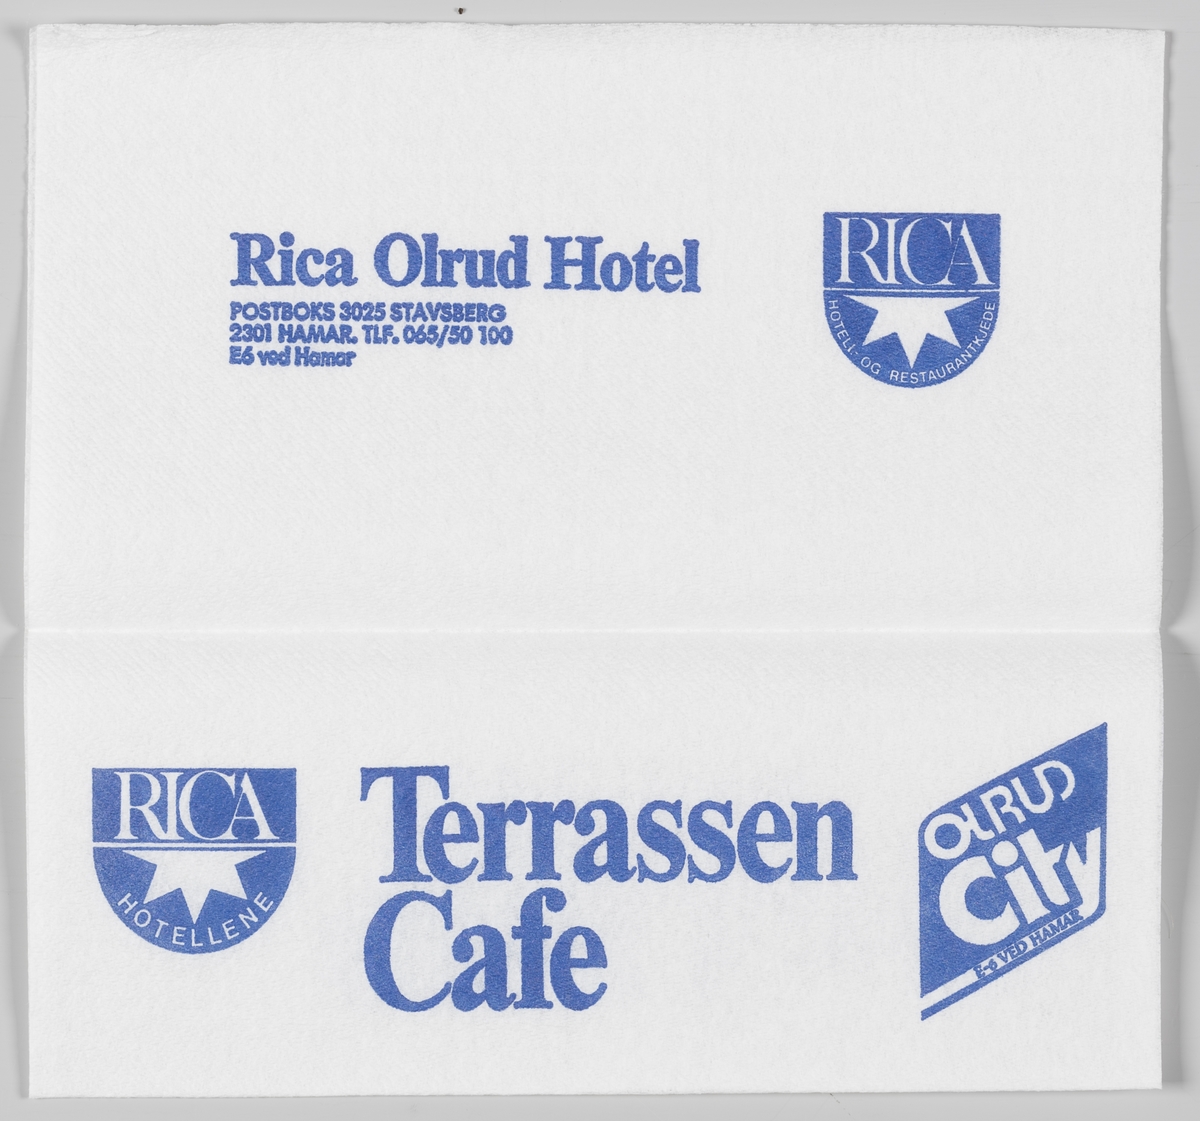 Logoene til Rica Hotell kjeden og Olrud City og en reklametekst for Olrud kro og kafeteria, Rica Olrud Hotel og Terassen Cafe beliggende på Ringsaker/Hamar.
I 2013 ble Rica hotel Olrud Hamar kjøpt opp av Scandic Hotels kjeden.